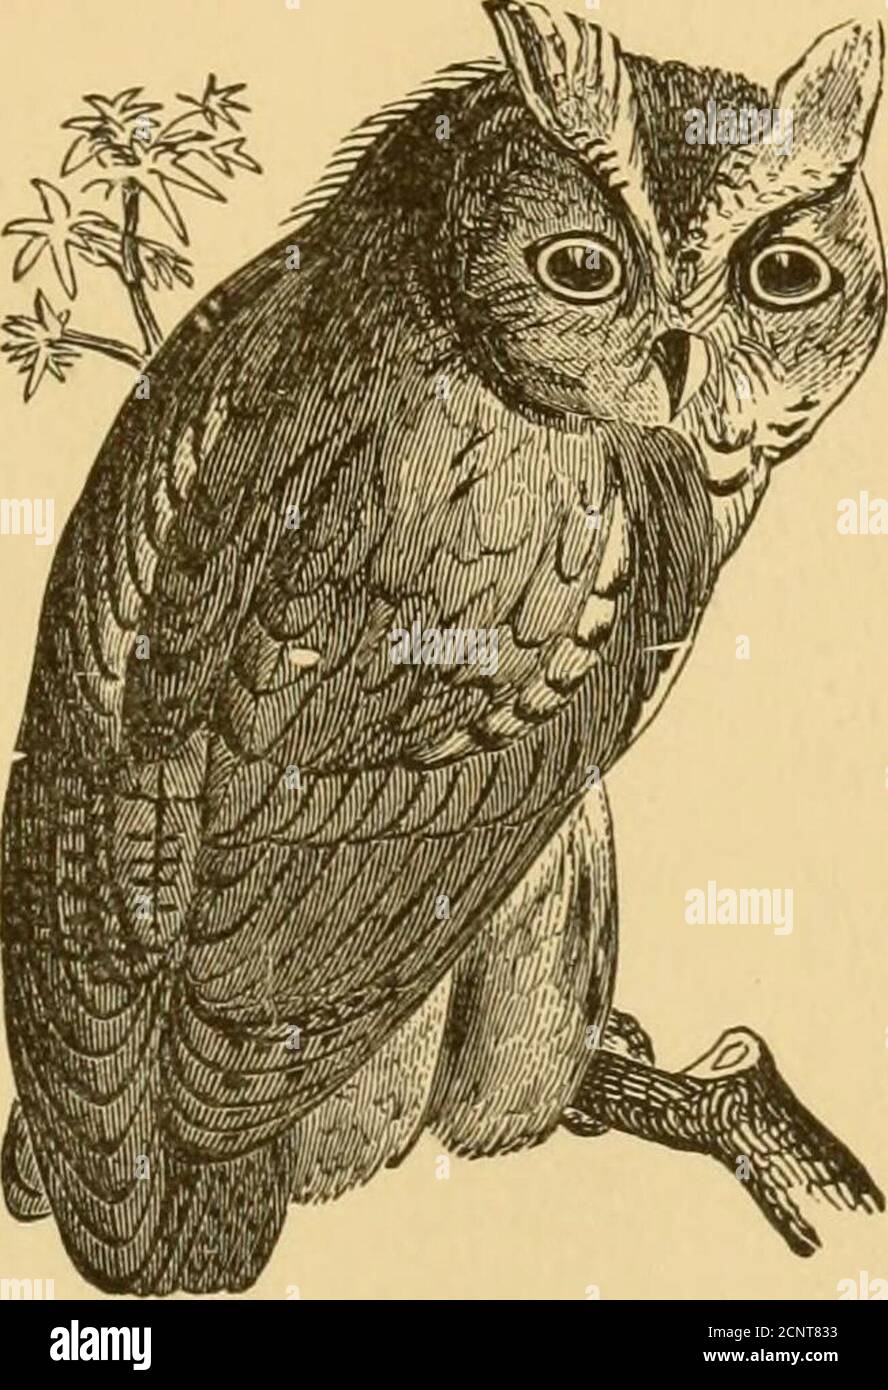 . Ornitologo e oölogist . LIBRARI O / O 7^ FONDATA NEL 1875. L'ORNITOLOGO E L'OOLOGIST.. VOL. VIII., 1883. UCCELLI: I LORO NIDI E UOVA. FXJULISHED DI JOSEPH M. ^^^ADE. BOSTON, MASSA. / •/S-SI&GT;-  /)R; DEDICATO ALLA MEMORIA DELL'IMMORTALE WILSON, DELL'ILLUSTRE AUDUBON E DEL DEVOTO NUTTALL. ^^5 ^ORNITOLOGO E OOLOGIST.^^^,R^^ ^ CONTENUTI DI VOL. VIII-1883. Aprile AValk, un Audubon 44 79 Back Volumes 96 Bendire, Cap Chas. E., U. S. A 22 etichette di uccello. Nuovi 96 brani di uccelli, Odd 28 Birds. Contributi all'anatomia di. . 55 Uccelli del Nord America, Giaspieri 38 Foto Stock